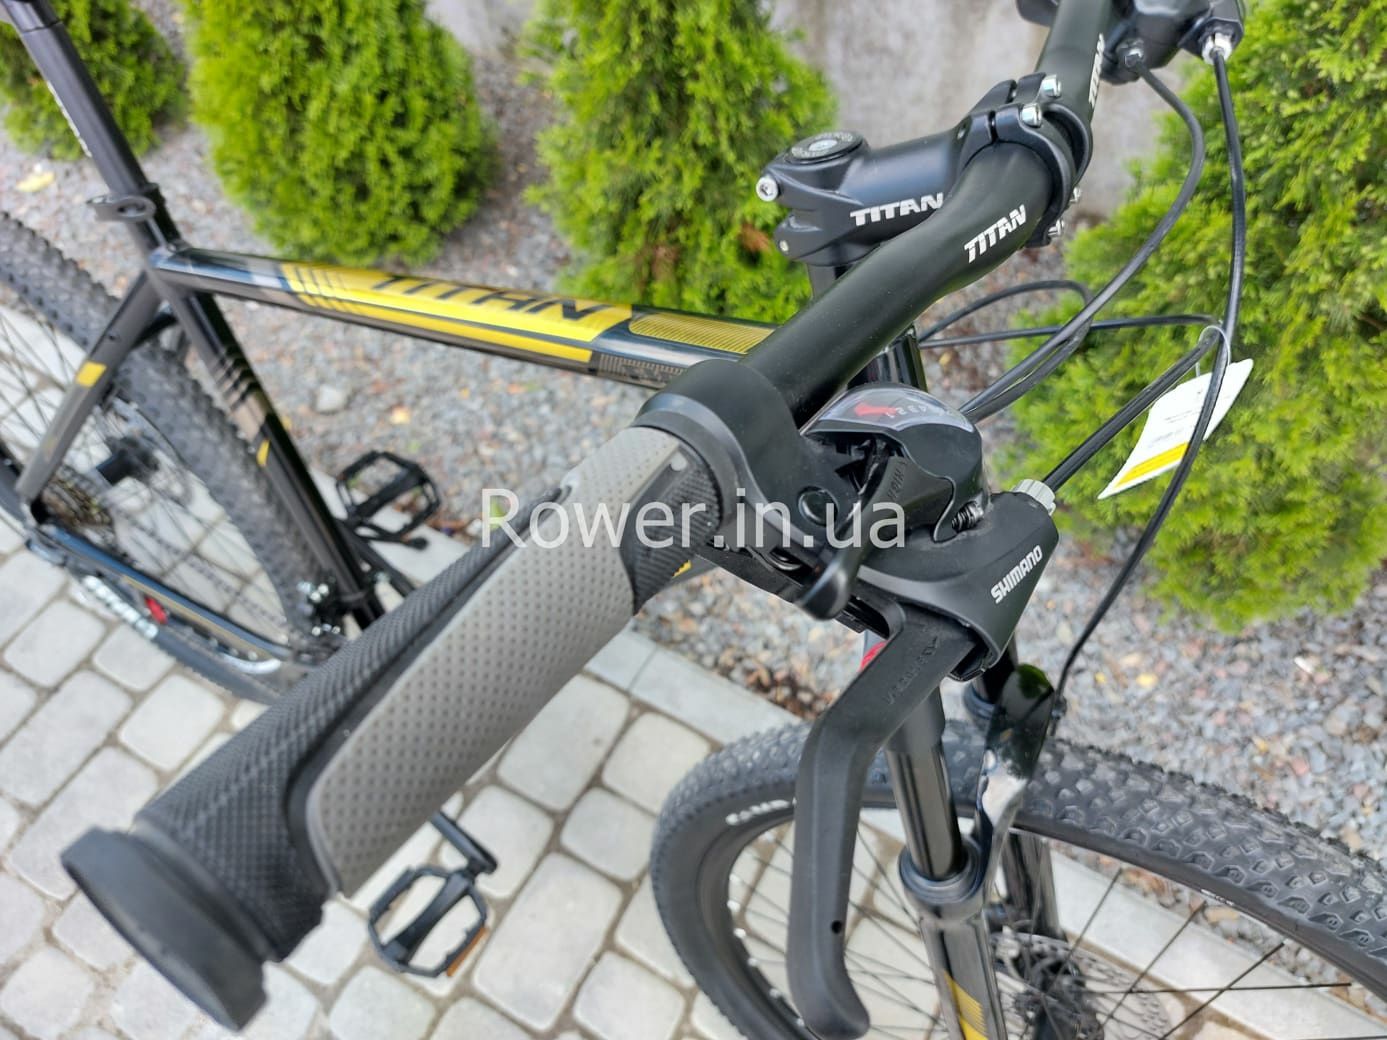 Алюмінієвий велосипед новий Titan First 27.5 Black Gold рама 20"